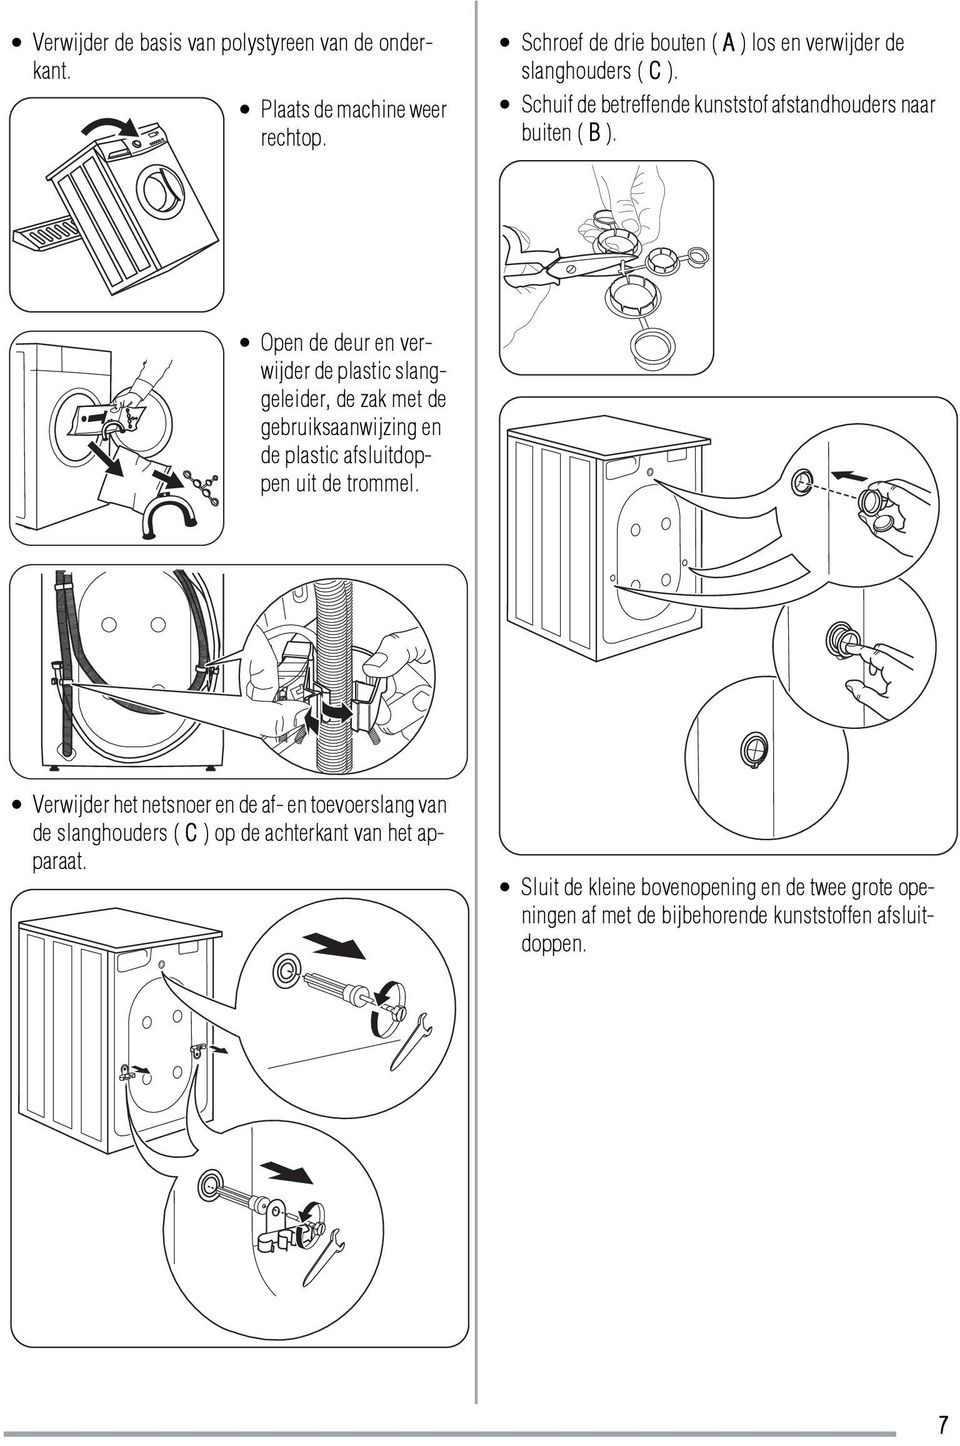 Open de deur en verwijder de plastic slanggeleider, de zak met de gebruiksaanwijzing en de plastic afsluitdoppen uit de trommel.